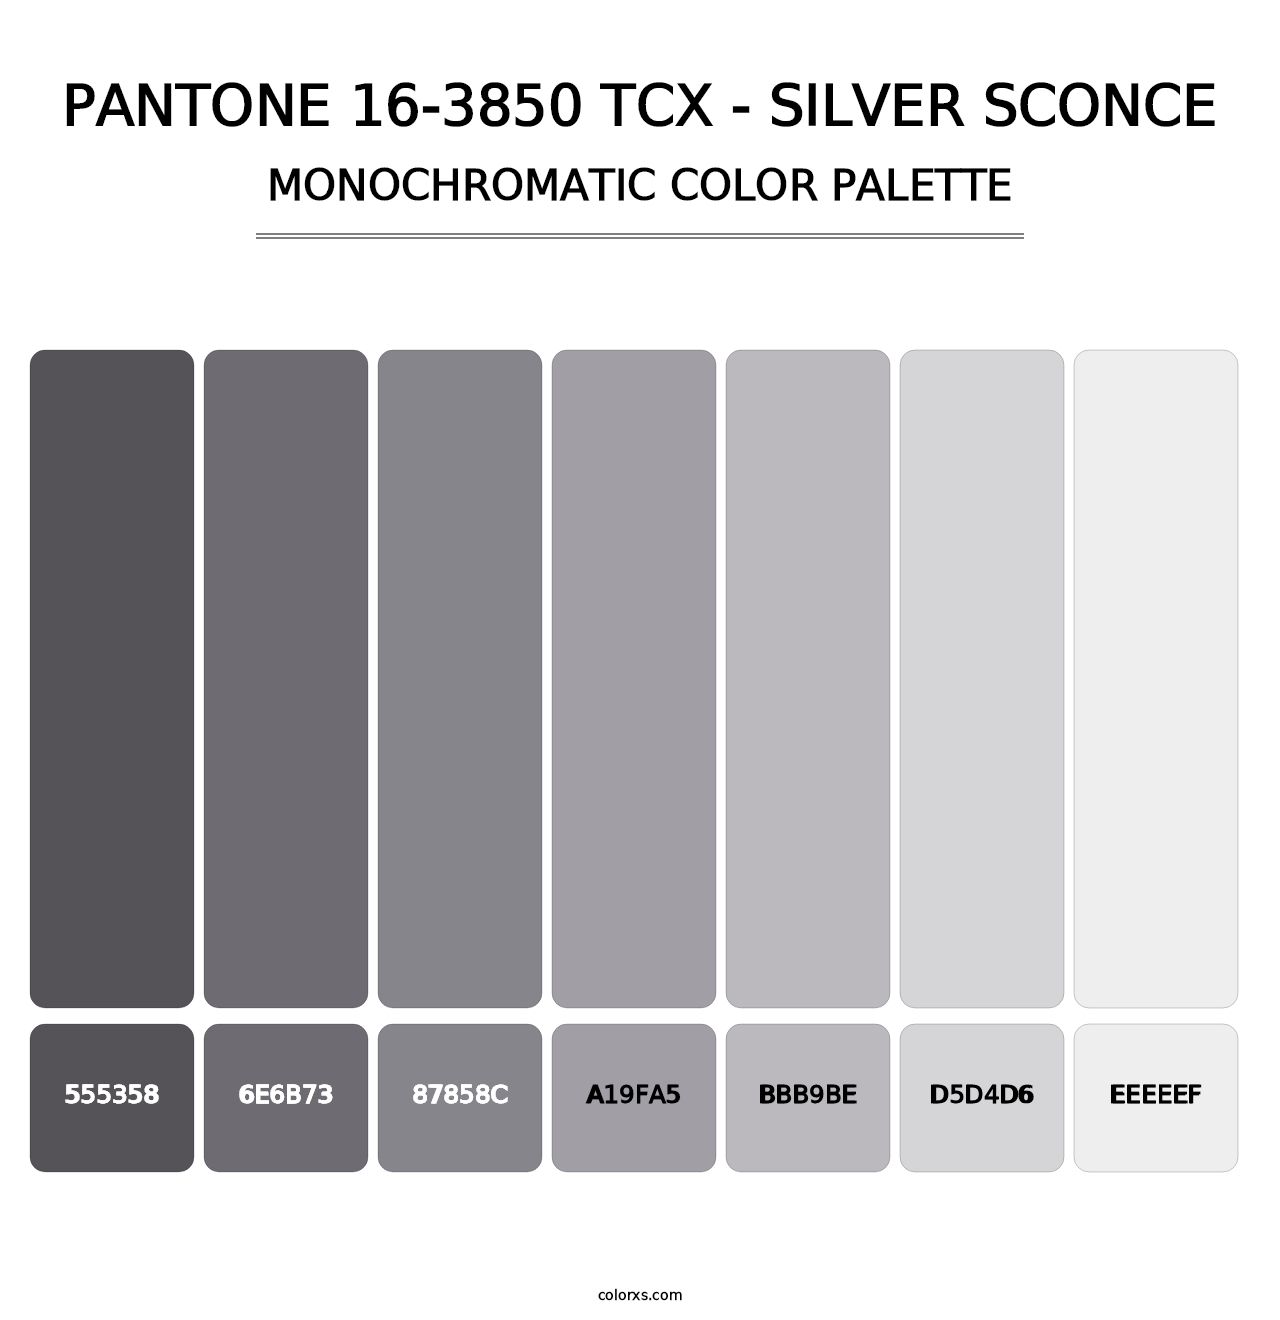 PANTONE 16-3850 TCX - Silver Sconce - Monochromatic Color Palette